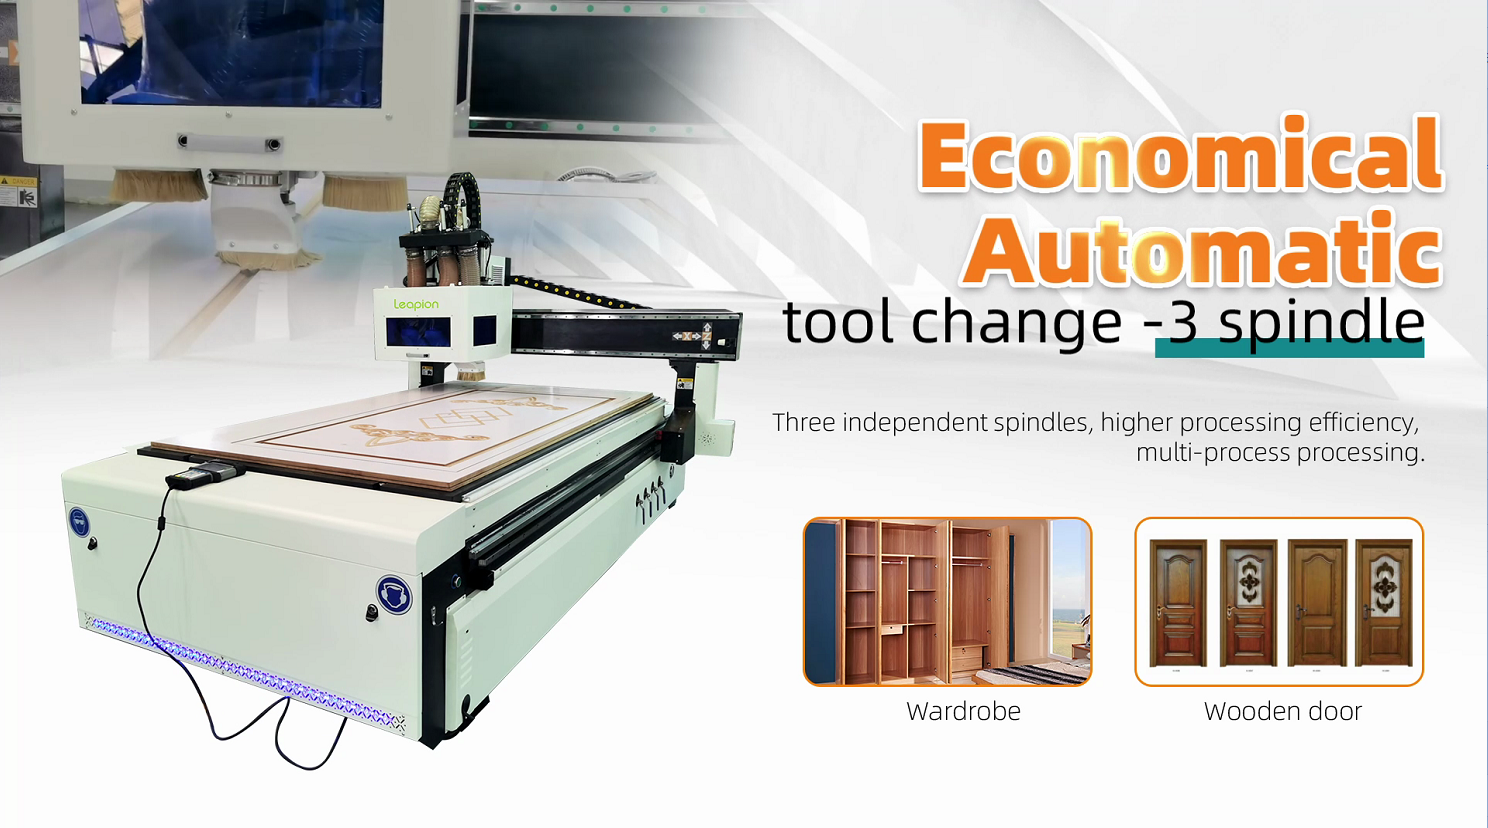 Leapion CNC Changement d'outil automatique économique - 3 broche